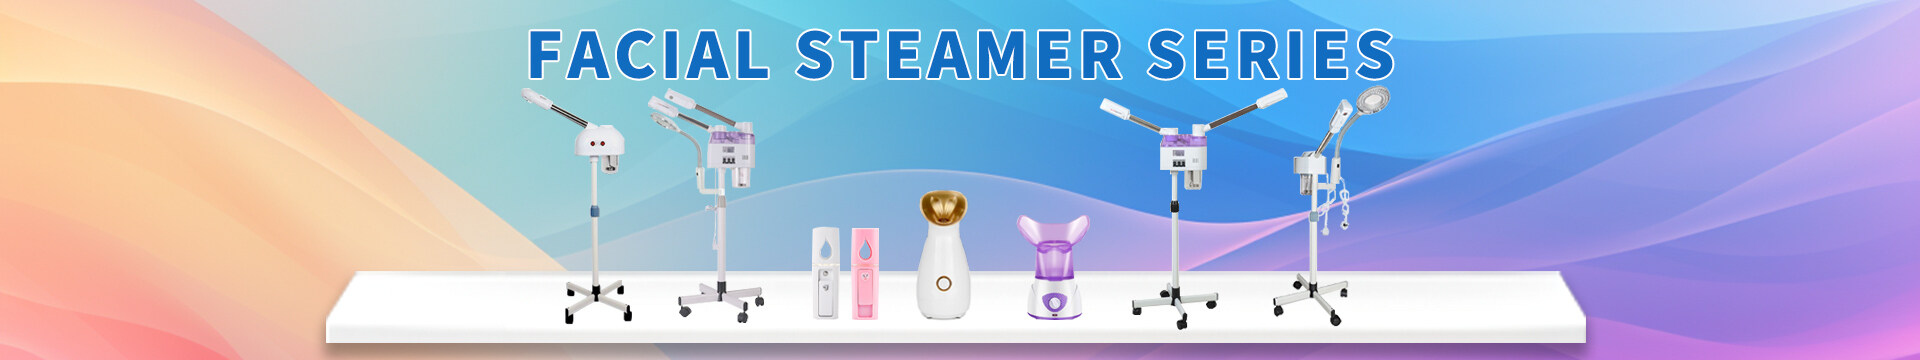 face steamer for facial mini, nano facial steamer mini, portable face steamer for facial mini, face steamer for facial deep cleaning mini